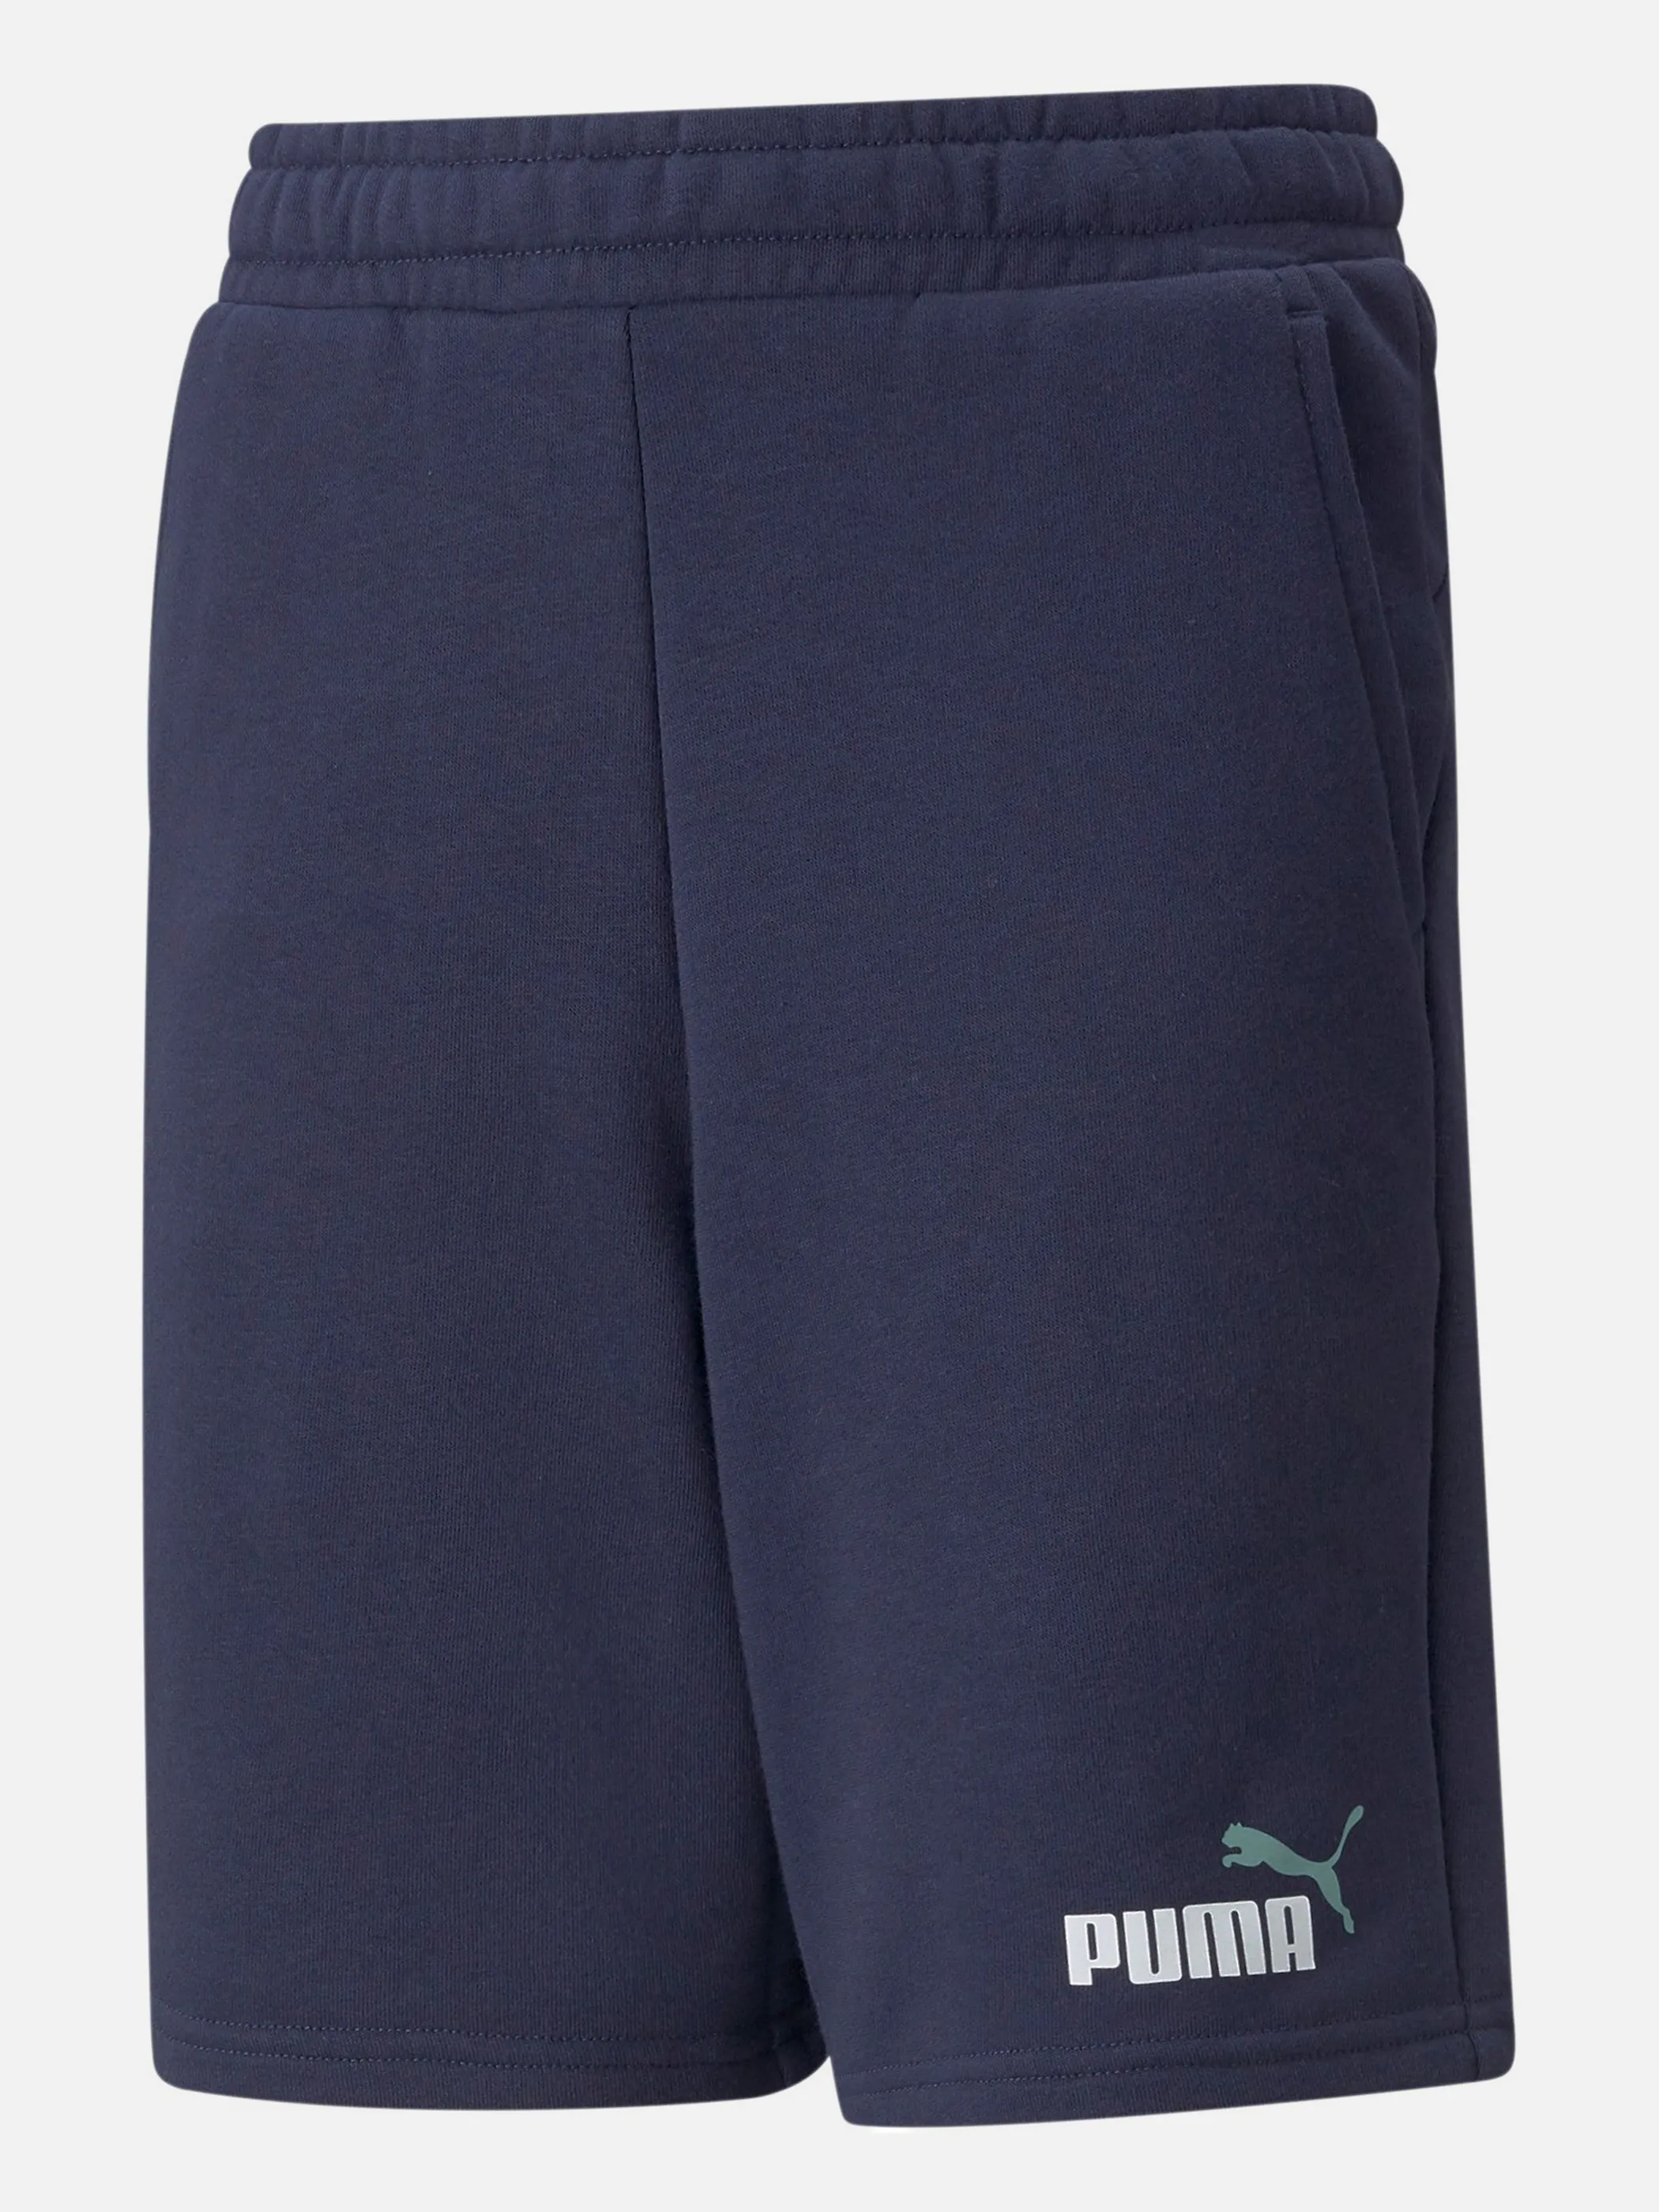 Puma 586989 Kn-Shorts, kl. Logo Blau 859775 96 1